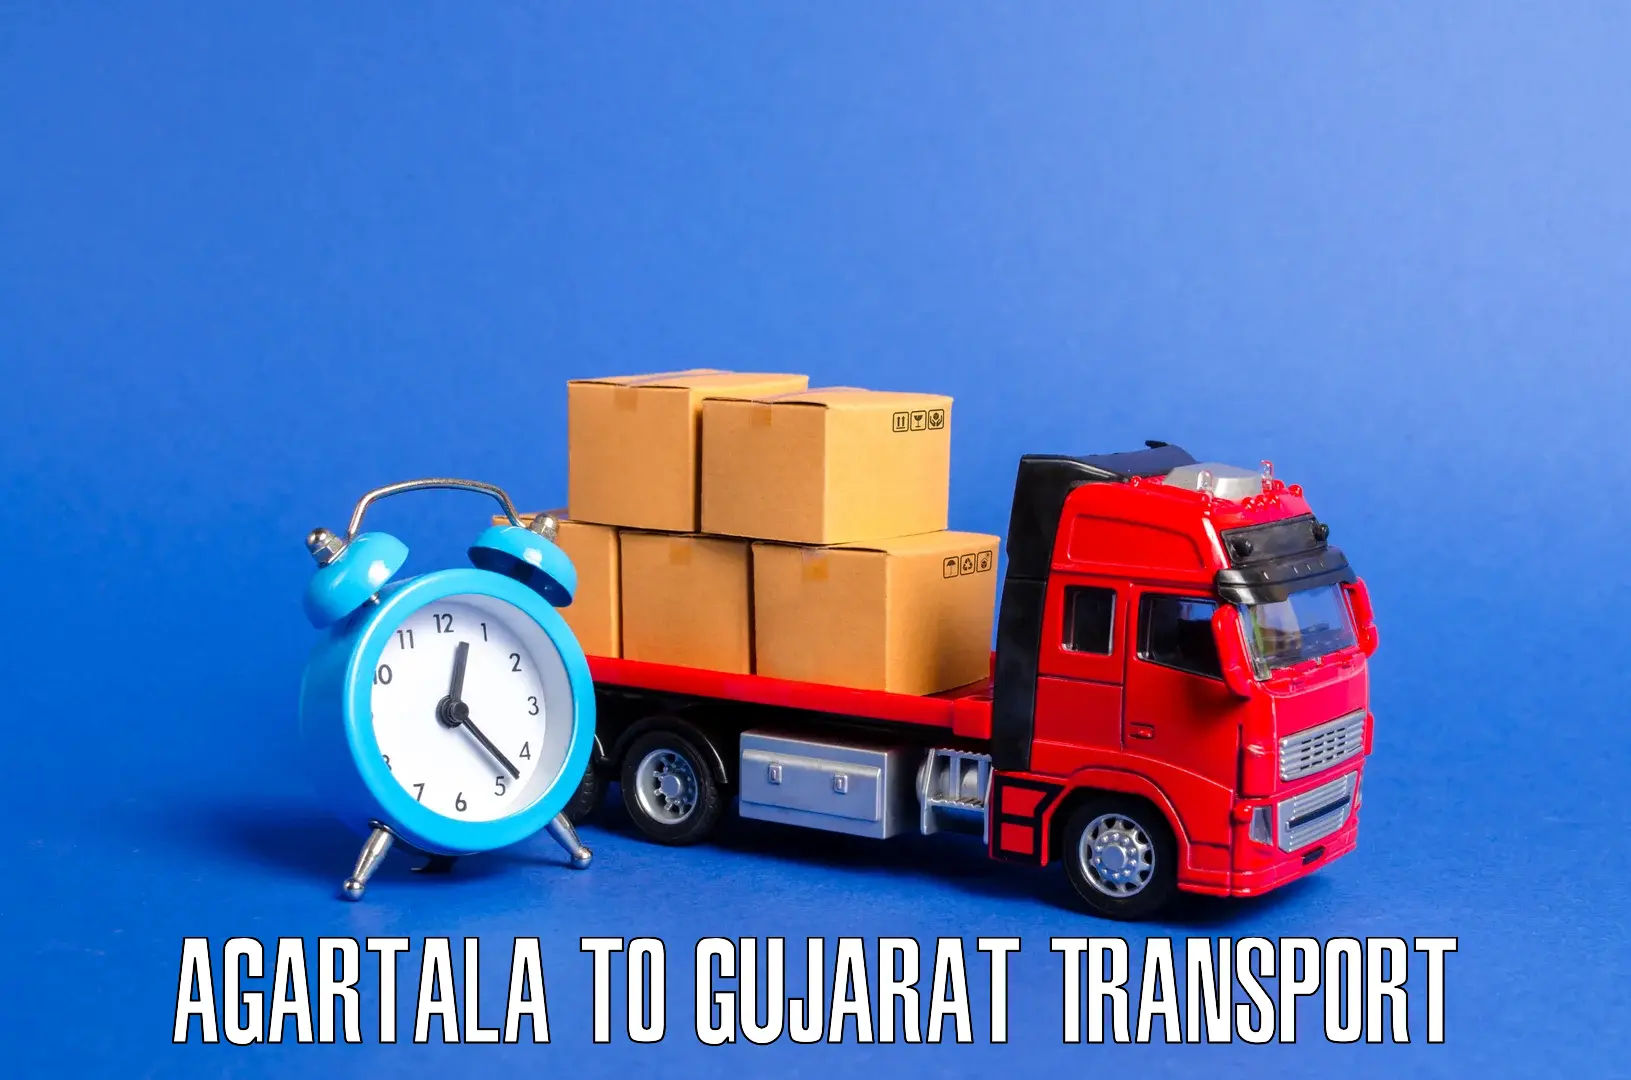 Nearby transport service Agartala to Nakhatrana